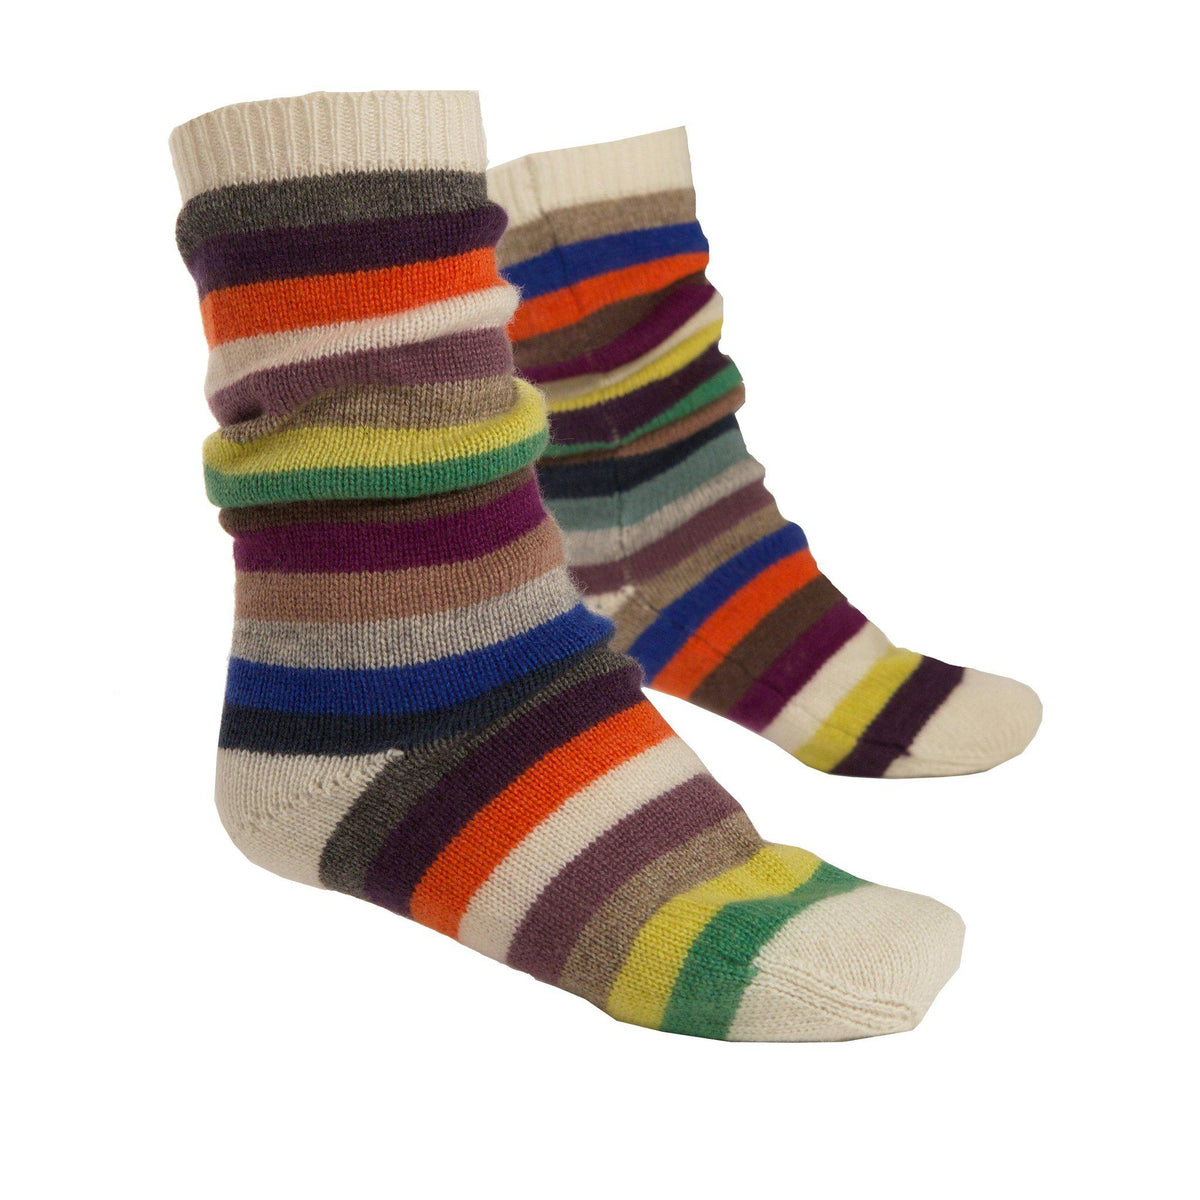 Multicolour Cashmere Stripy Long Sock - IndependentBoutique.com